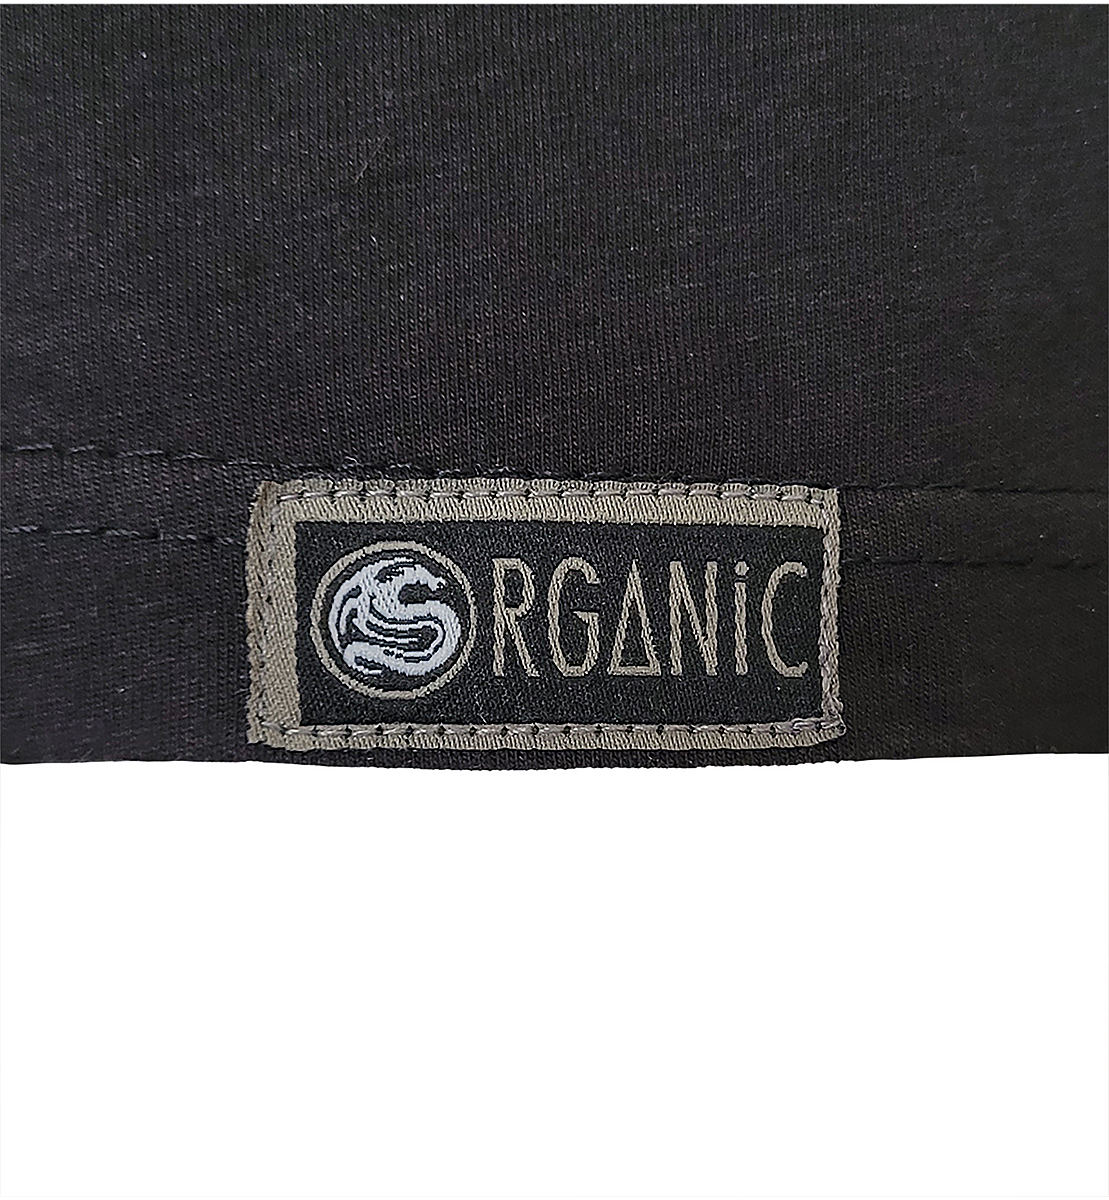 GAME OVER - Koszulka organiczna